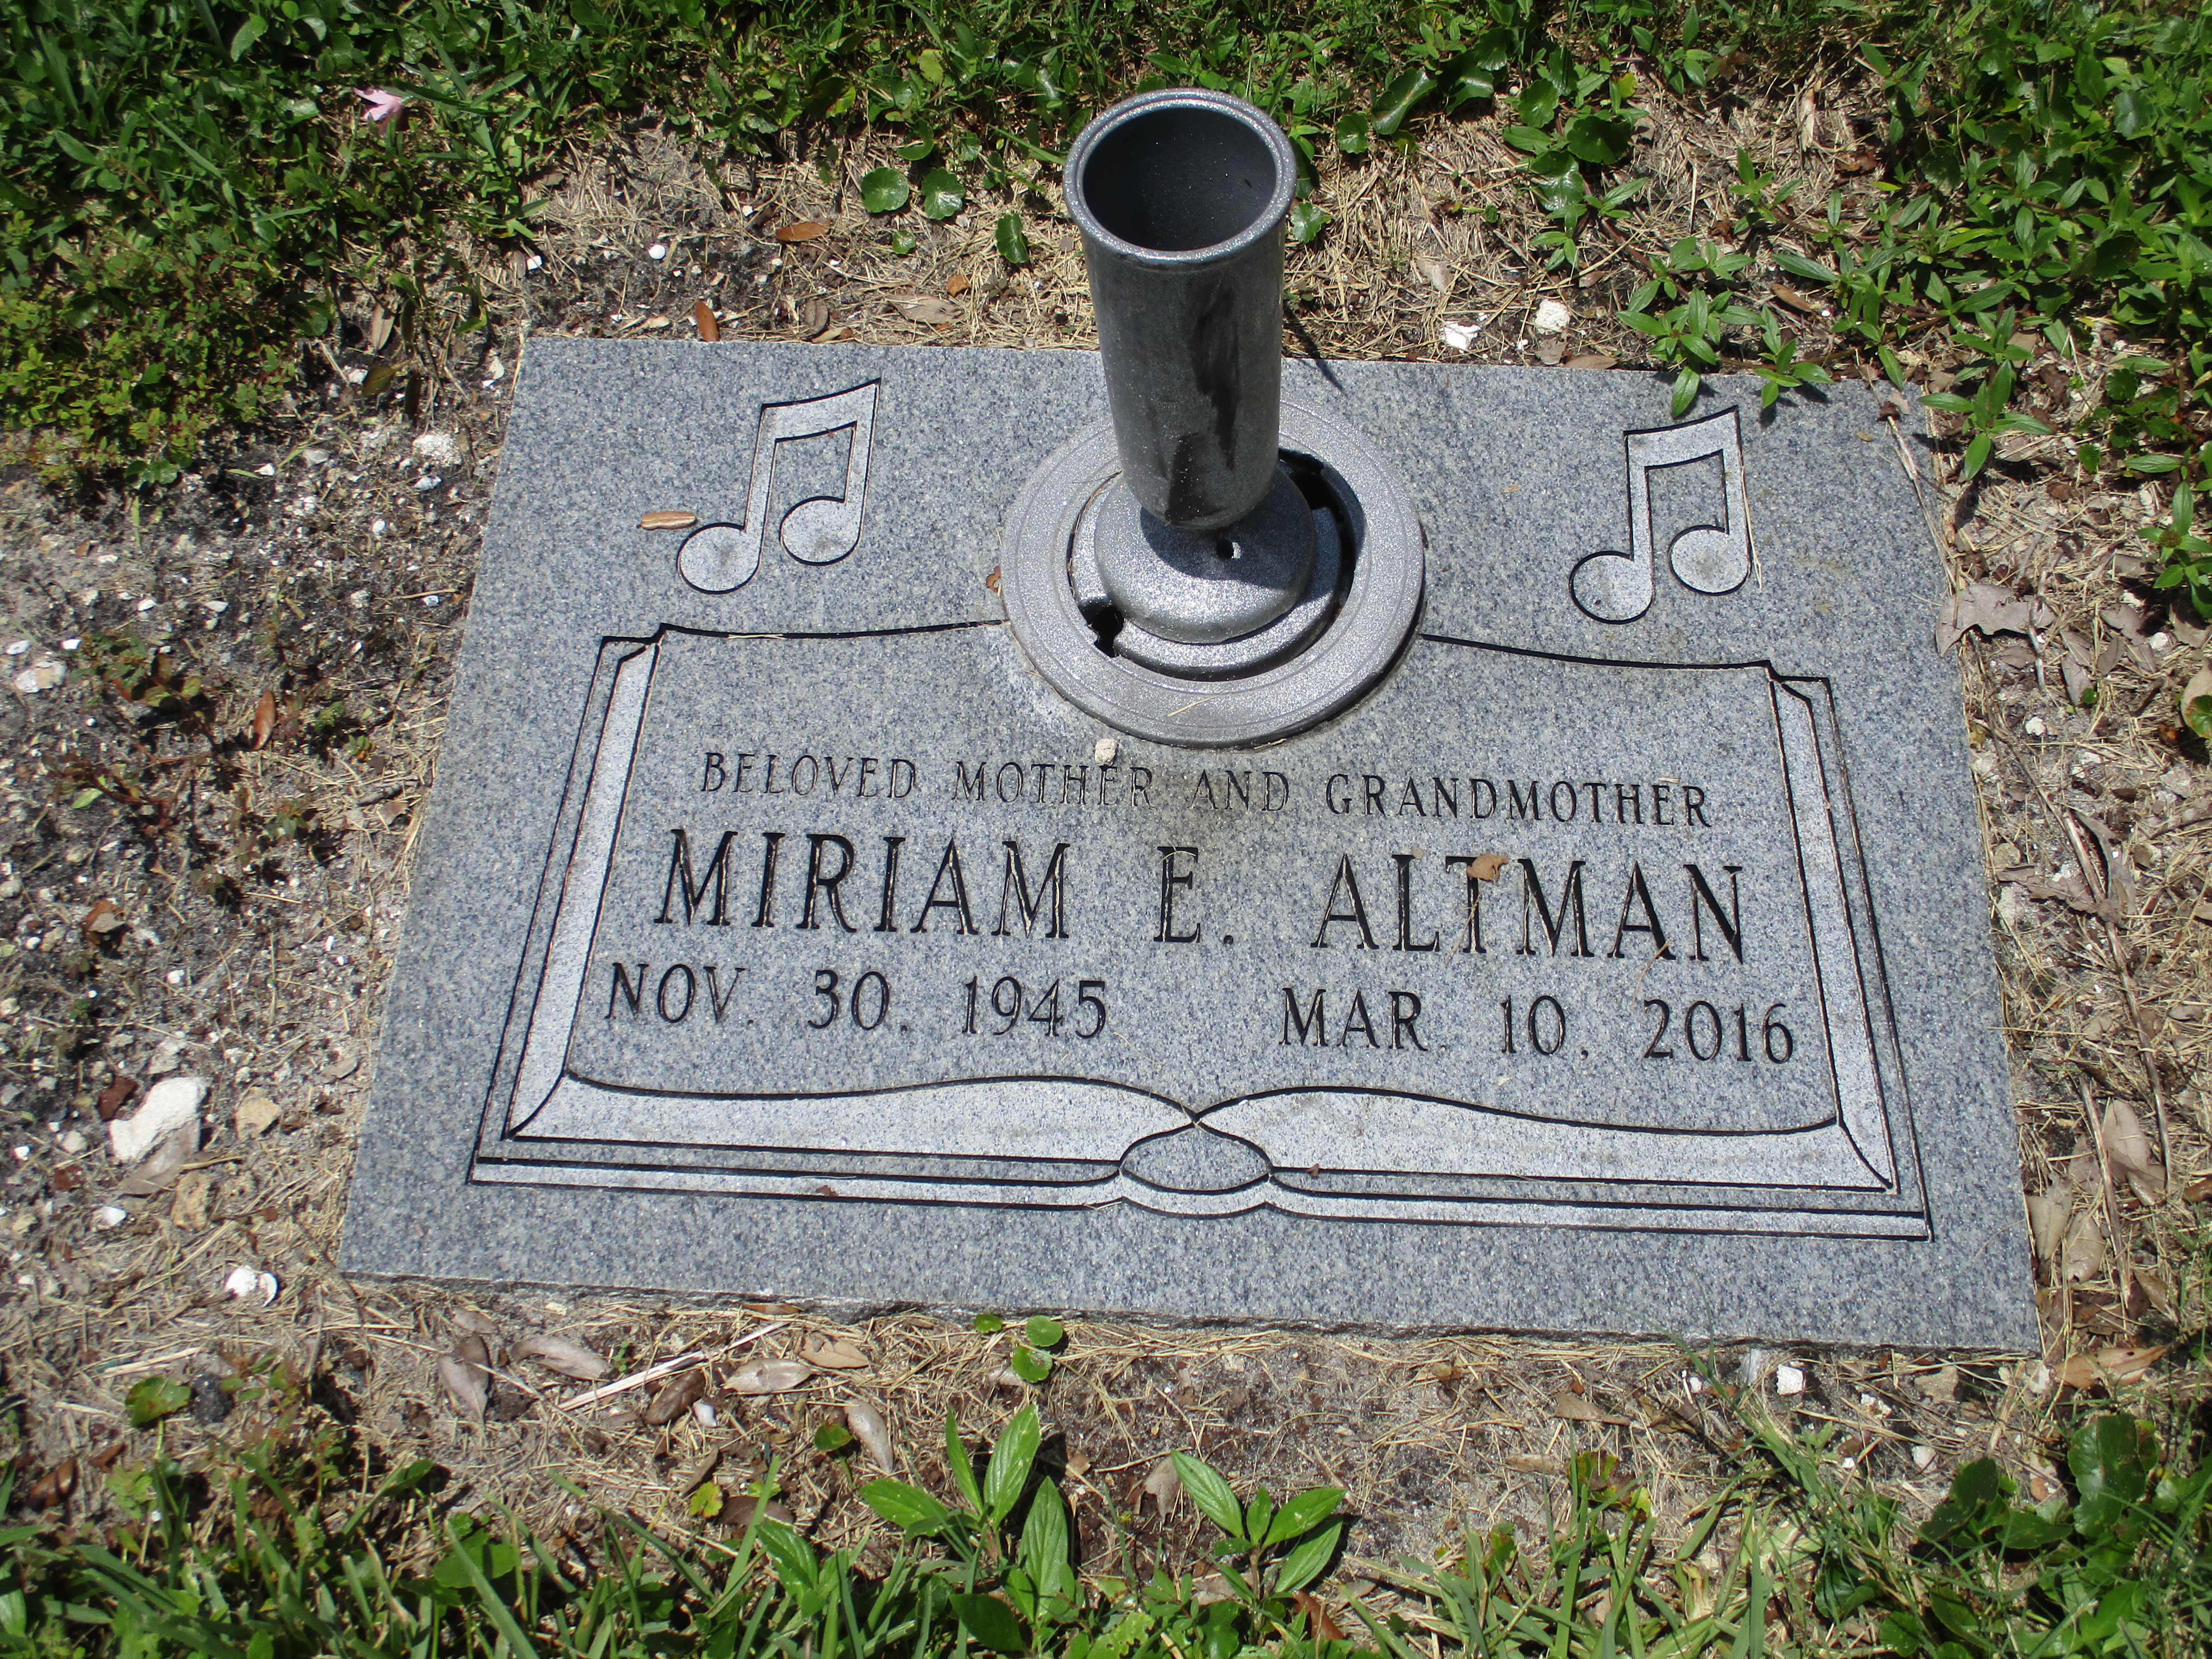 Miriam E Altman